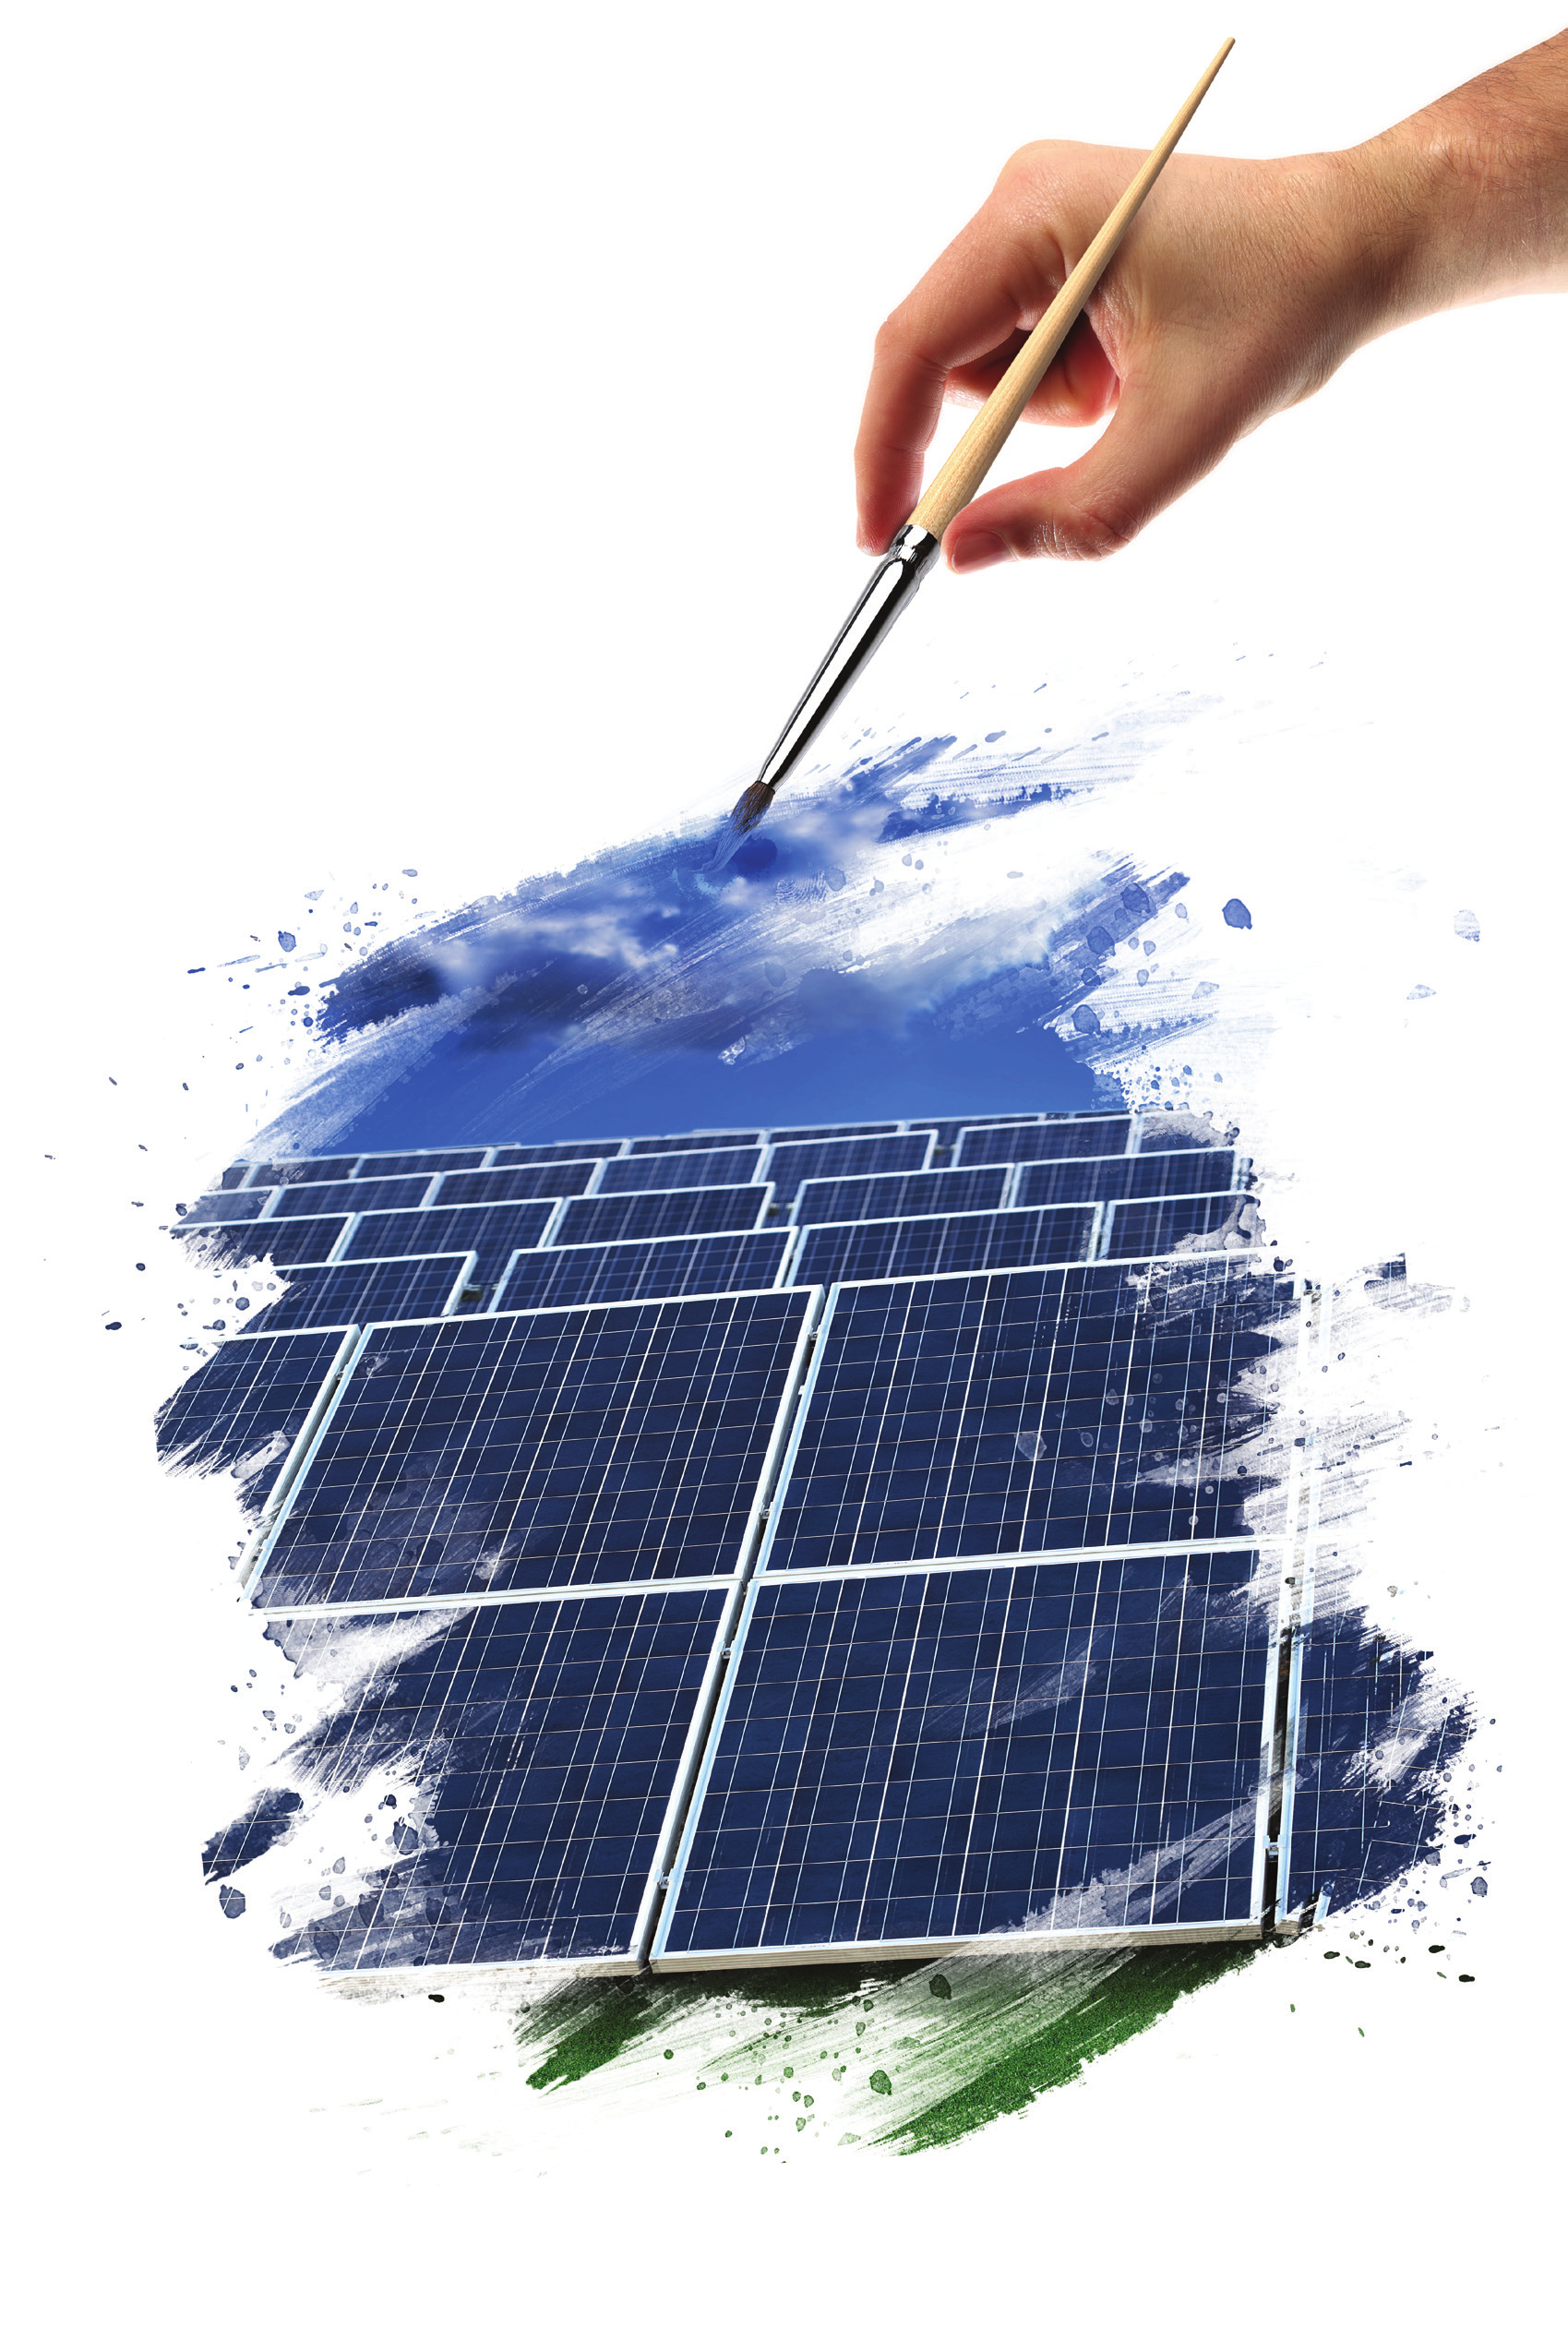 Pegaso Solar Power Divisione prodotti solari ed Energie Alternative Pegaso Solar Power DIVISIONE PRODOTTI SOLARI ED ENERGIE